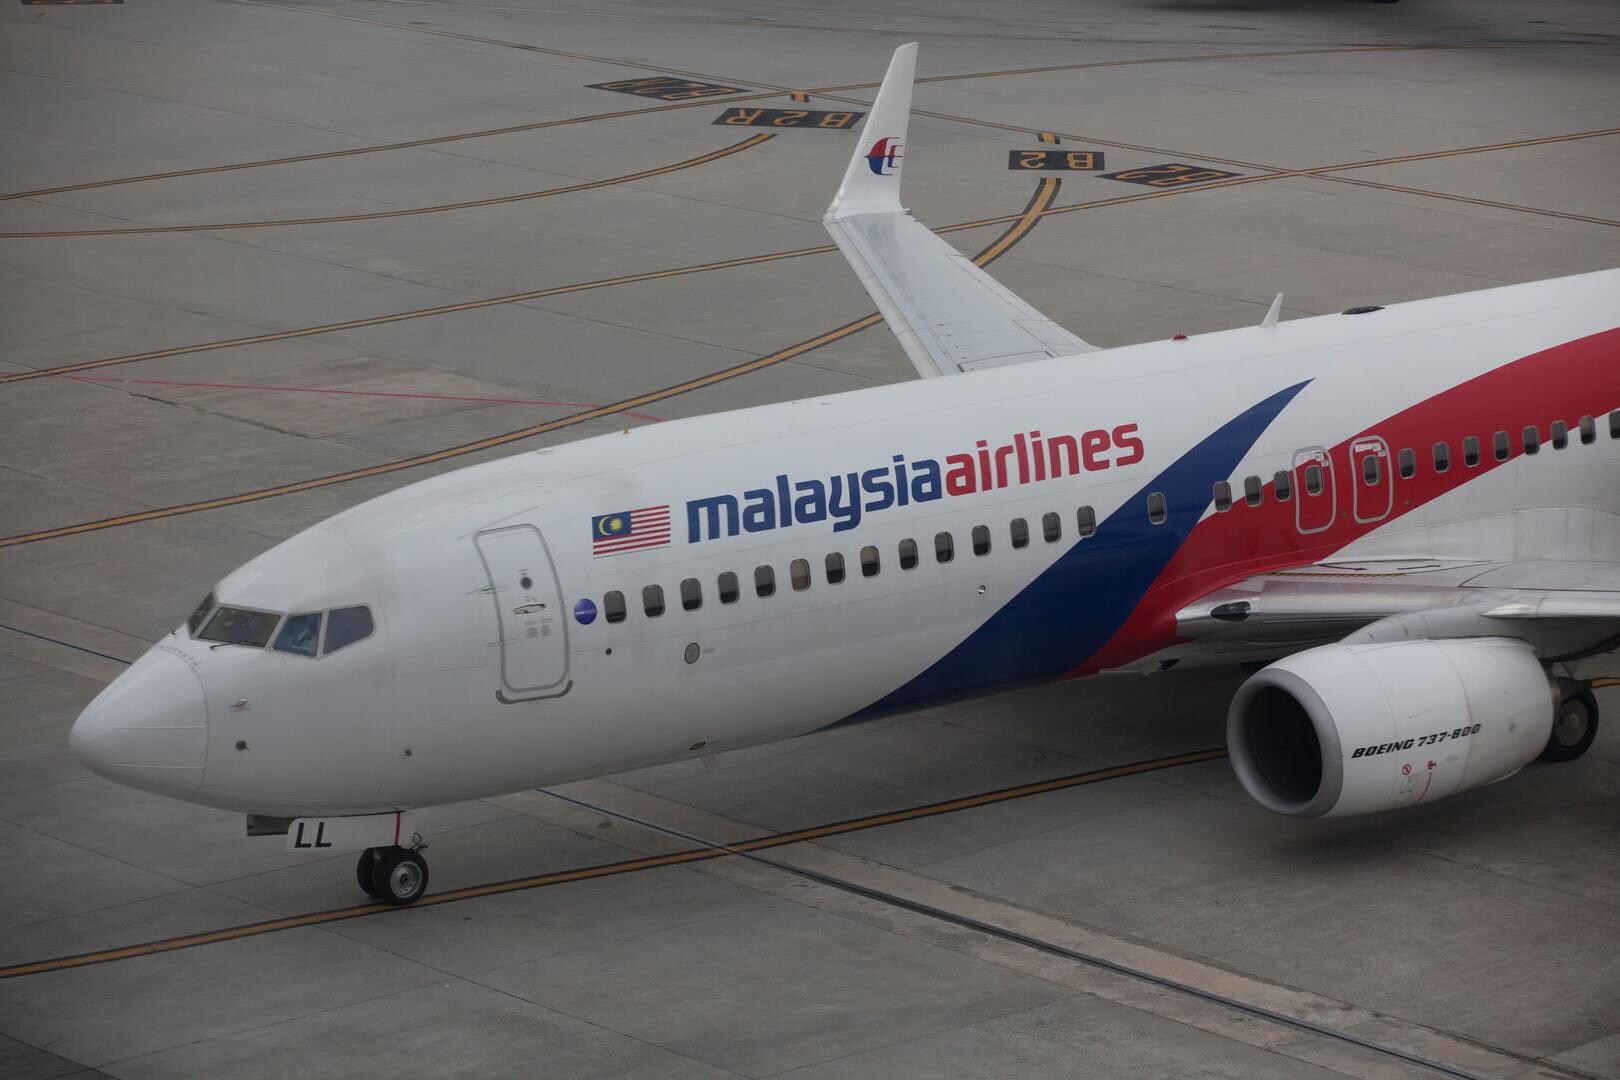 Brokstukken in Mozambique mogelijk van verdwenen vlucht MH370